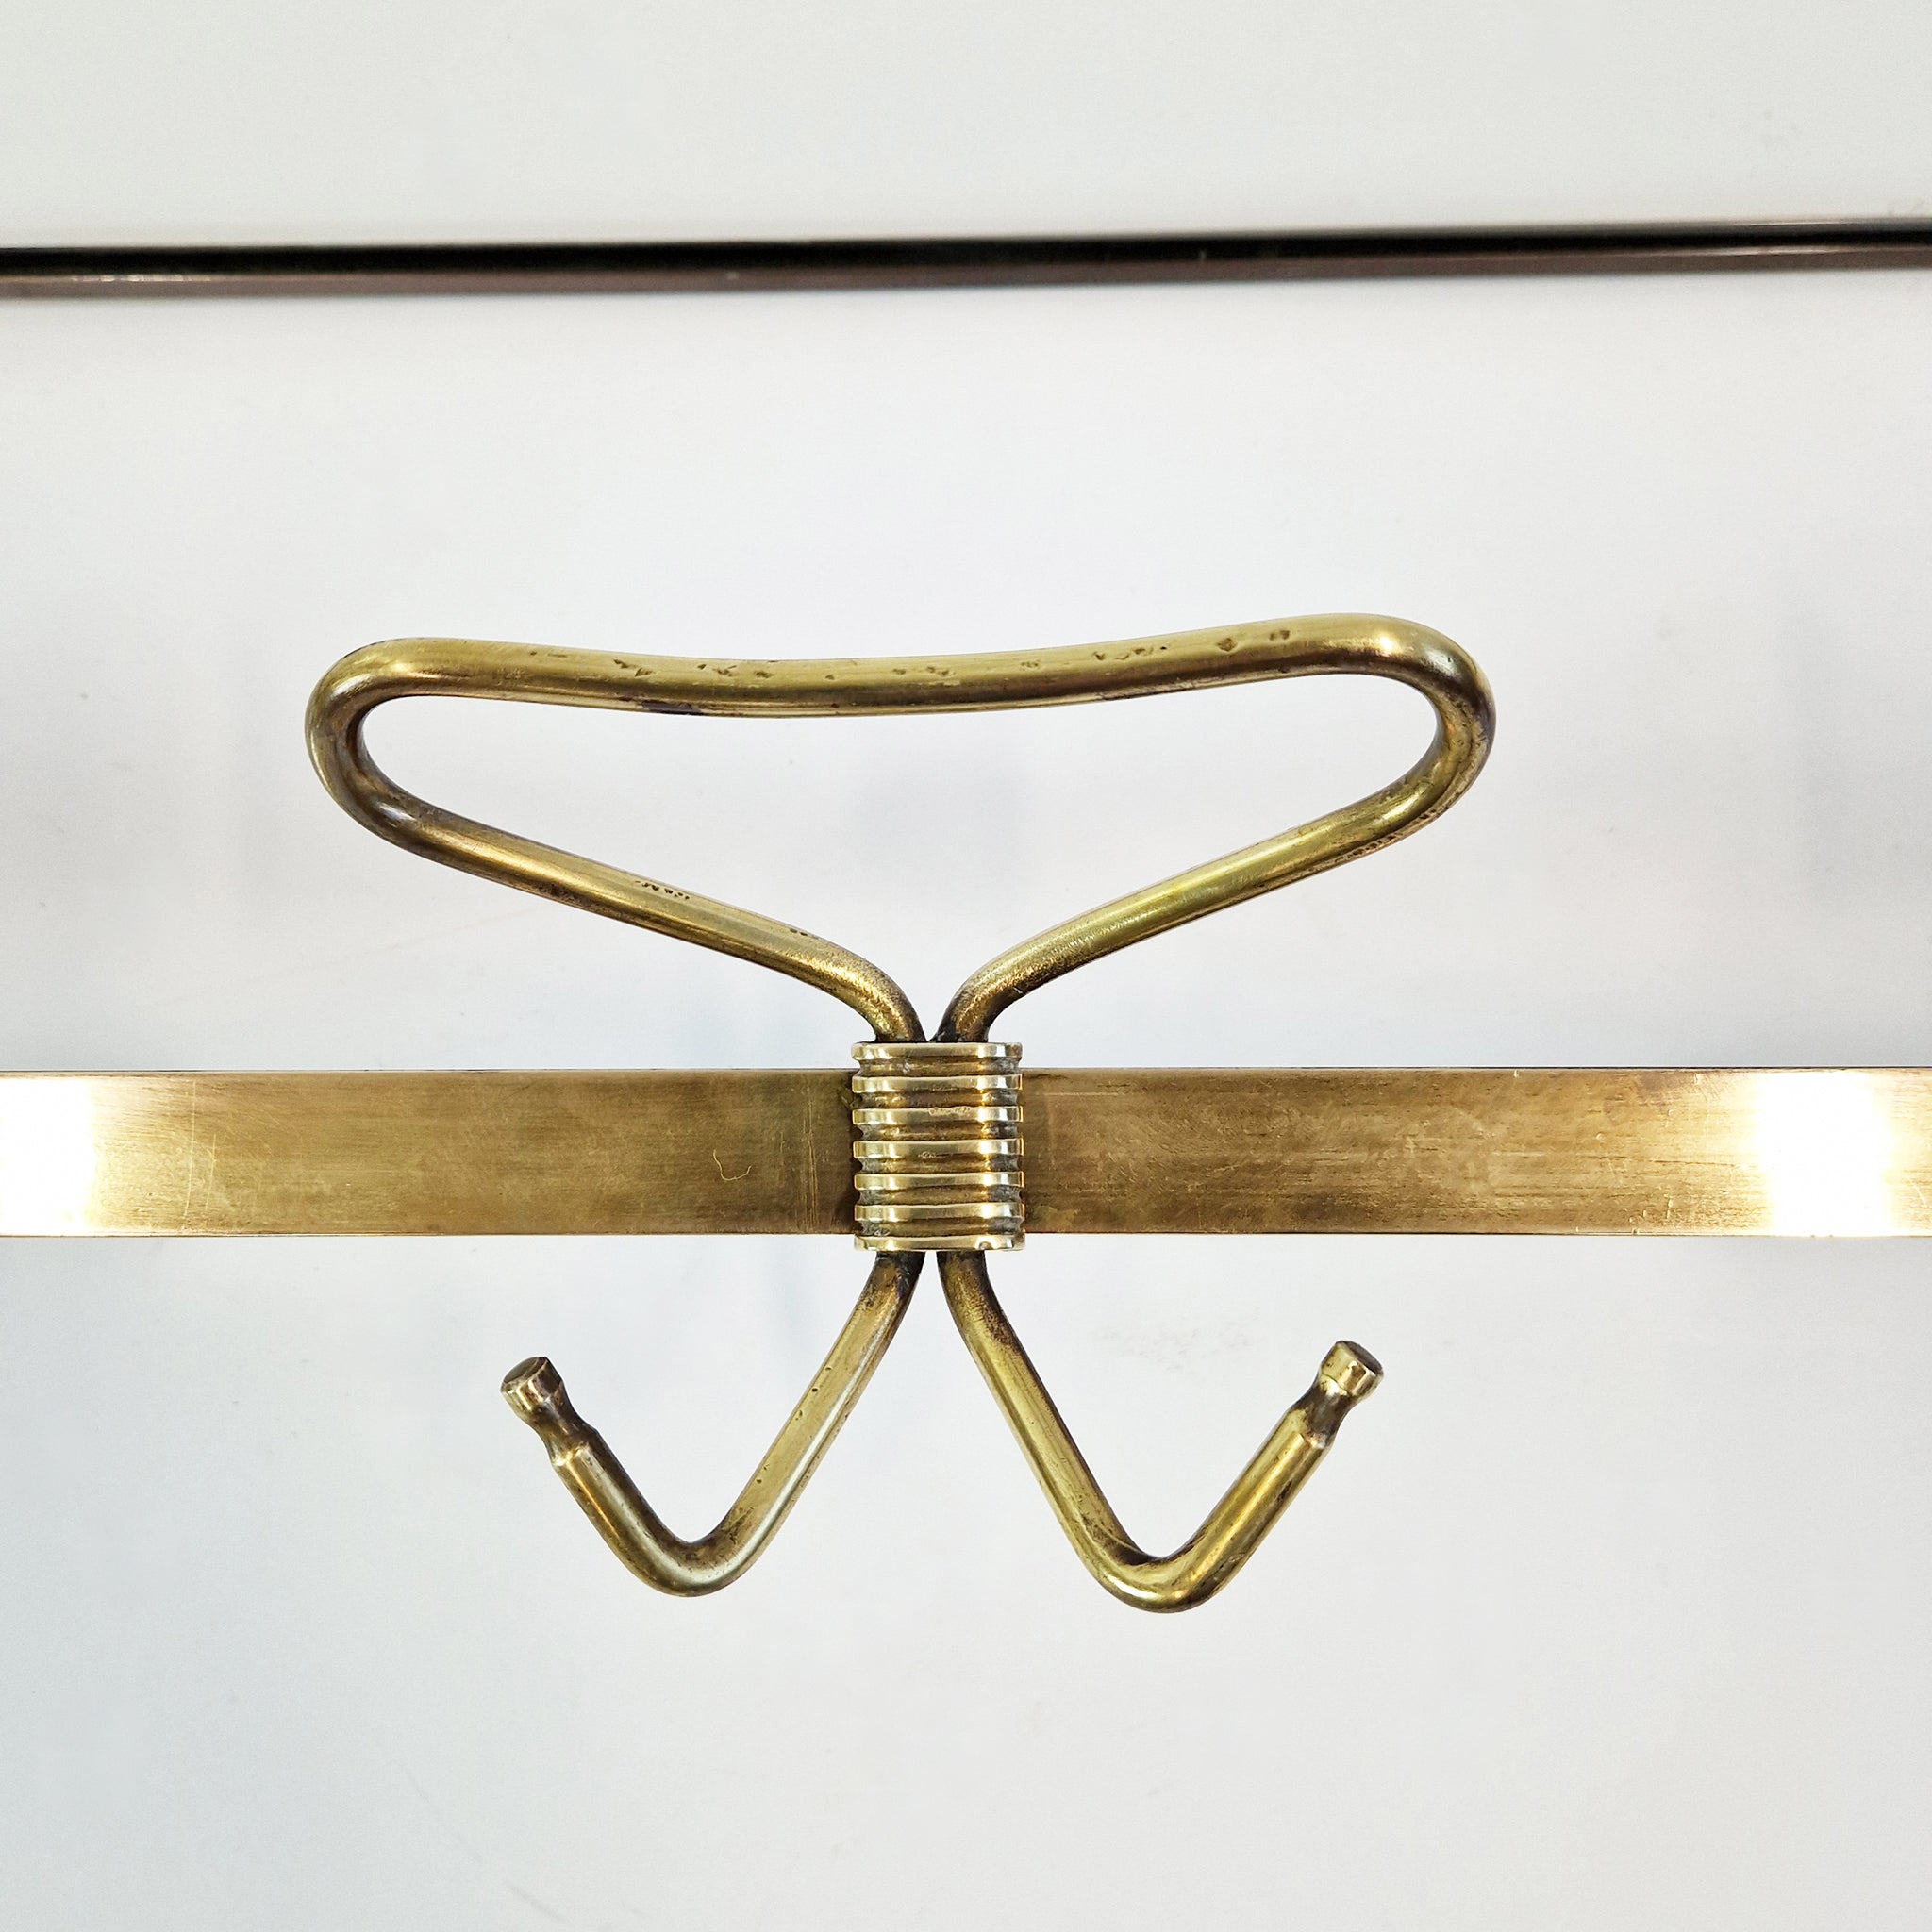 1950s Italian brass wall coat rack by Fontana Arte